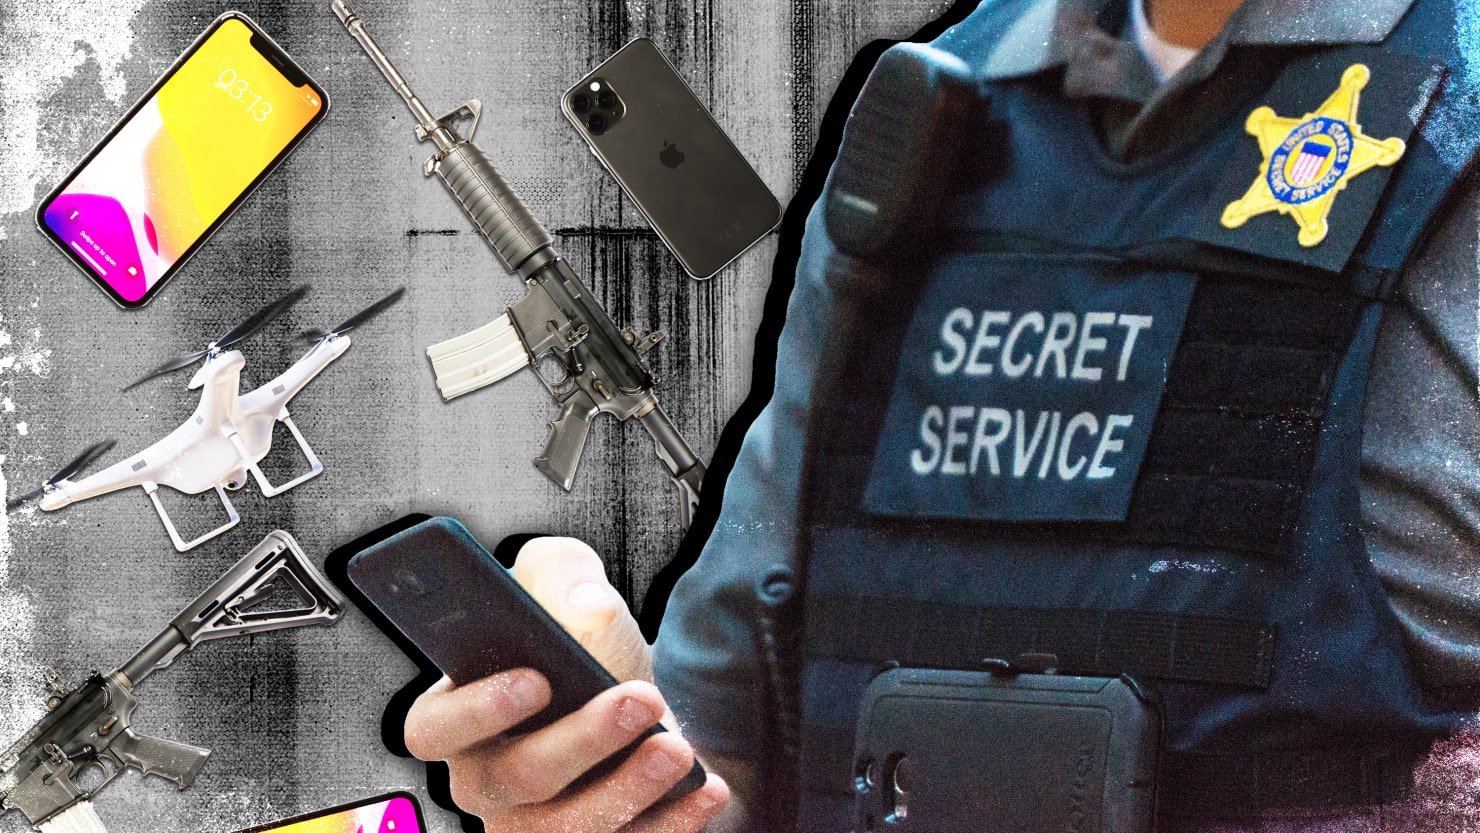 Los federales desentrañan el esquema salvaje de agentes falsos para engañar a los agentes del servicio secreto, incluido el detalle de FLOTUS